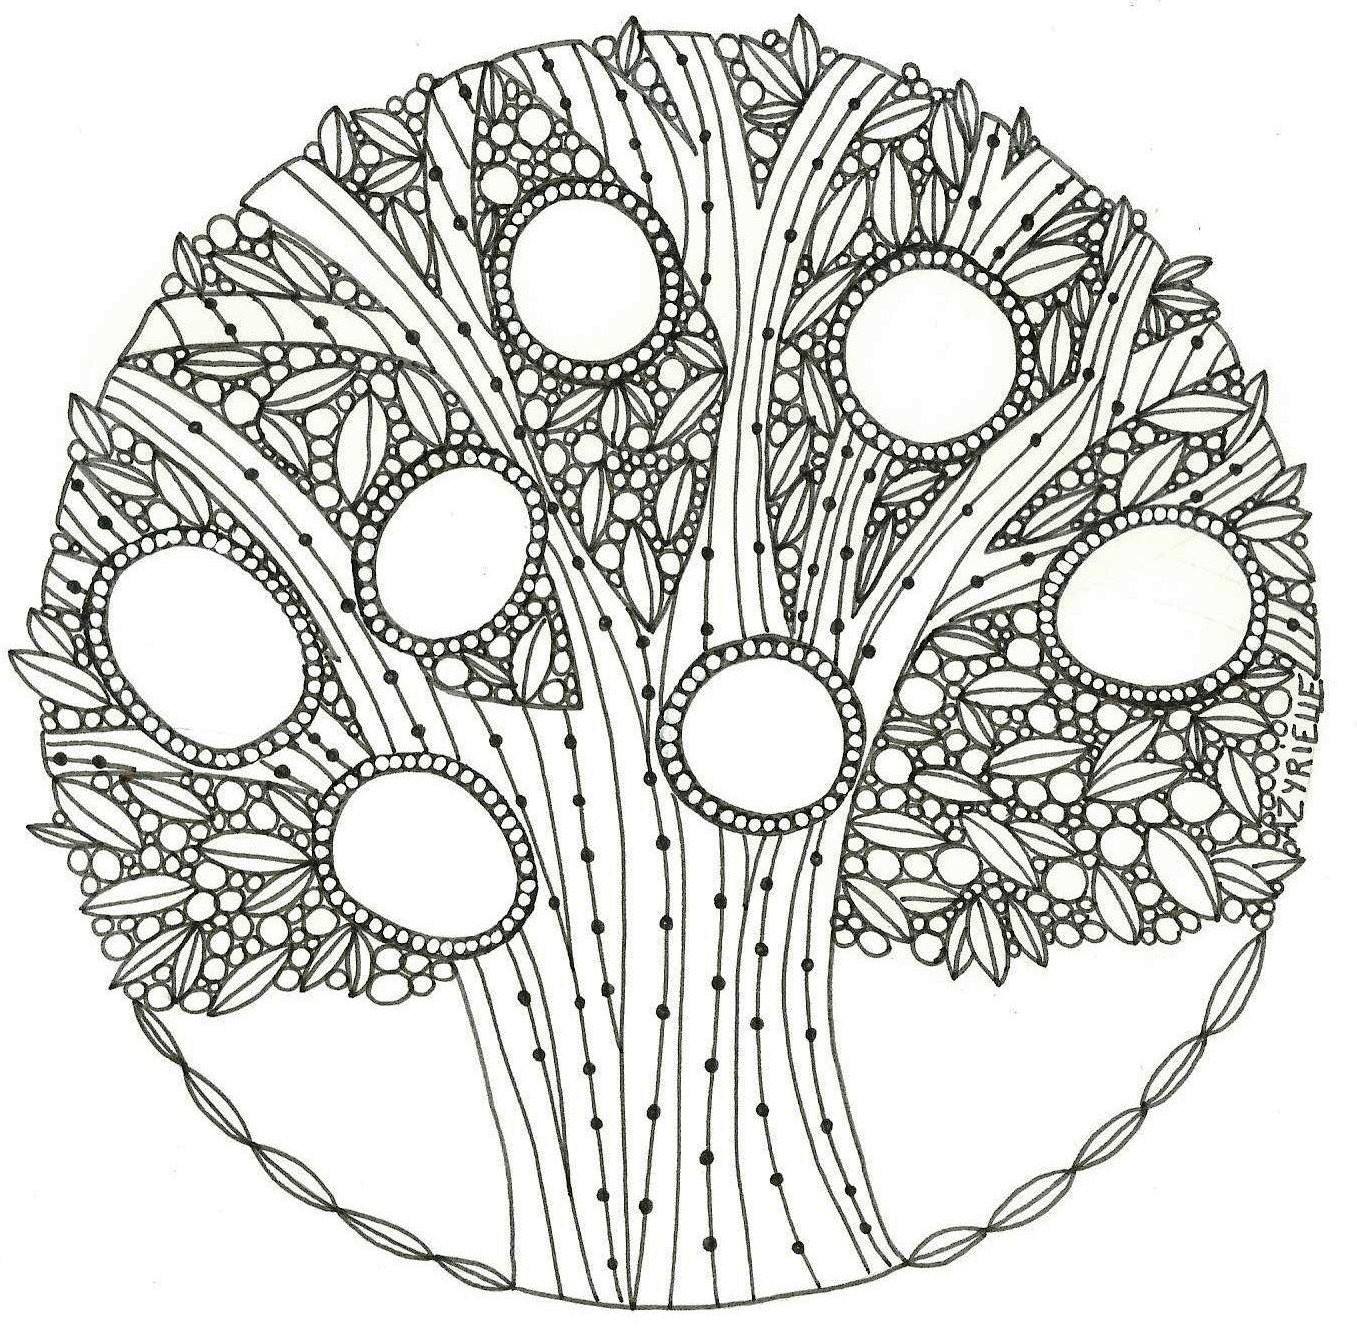 Der Wunderbaum, der Ihre Kreativität entwickelt und fördert, Künstler : Azyrielle